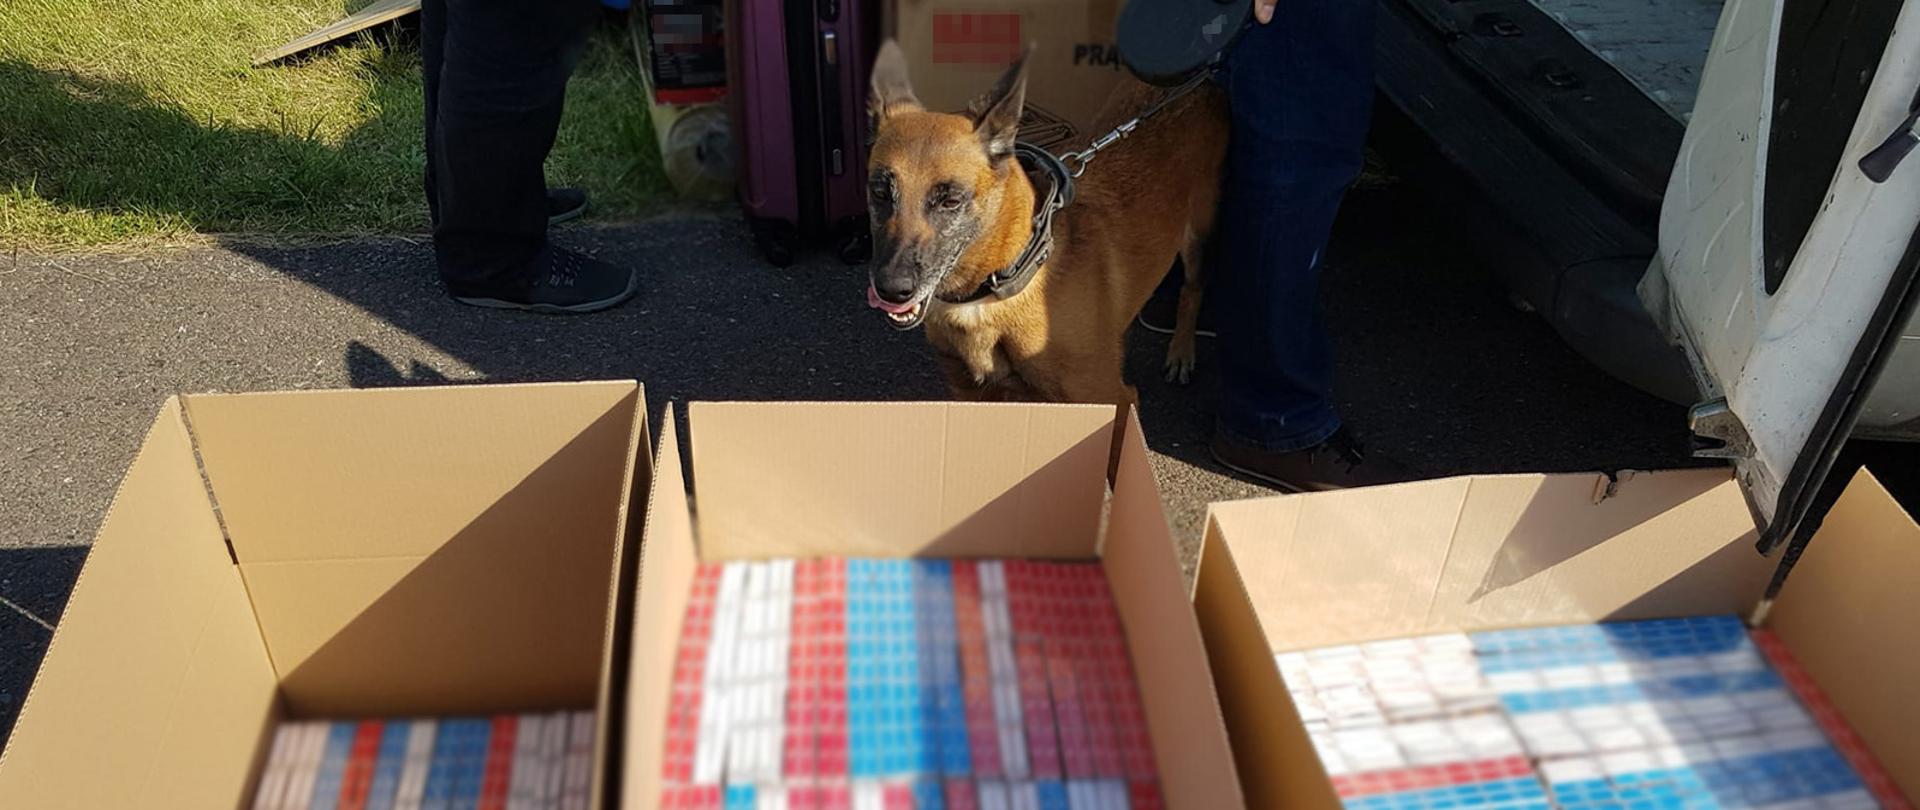 Pies Draba przy kartonach z papierosami.